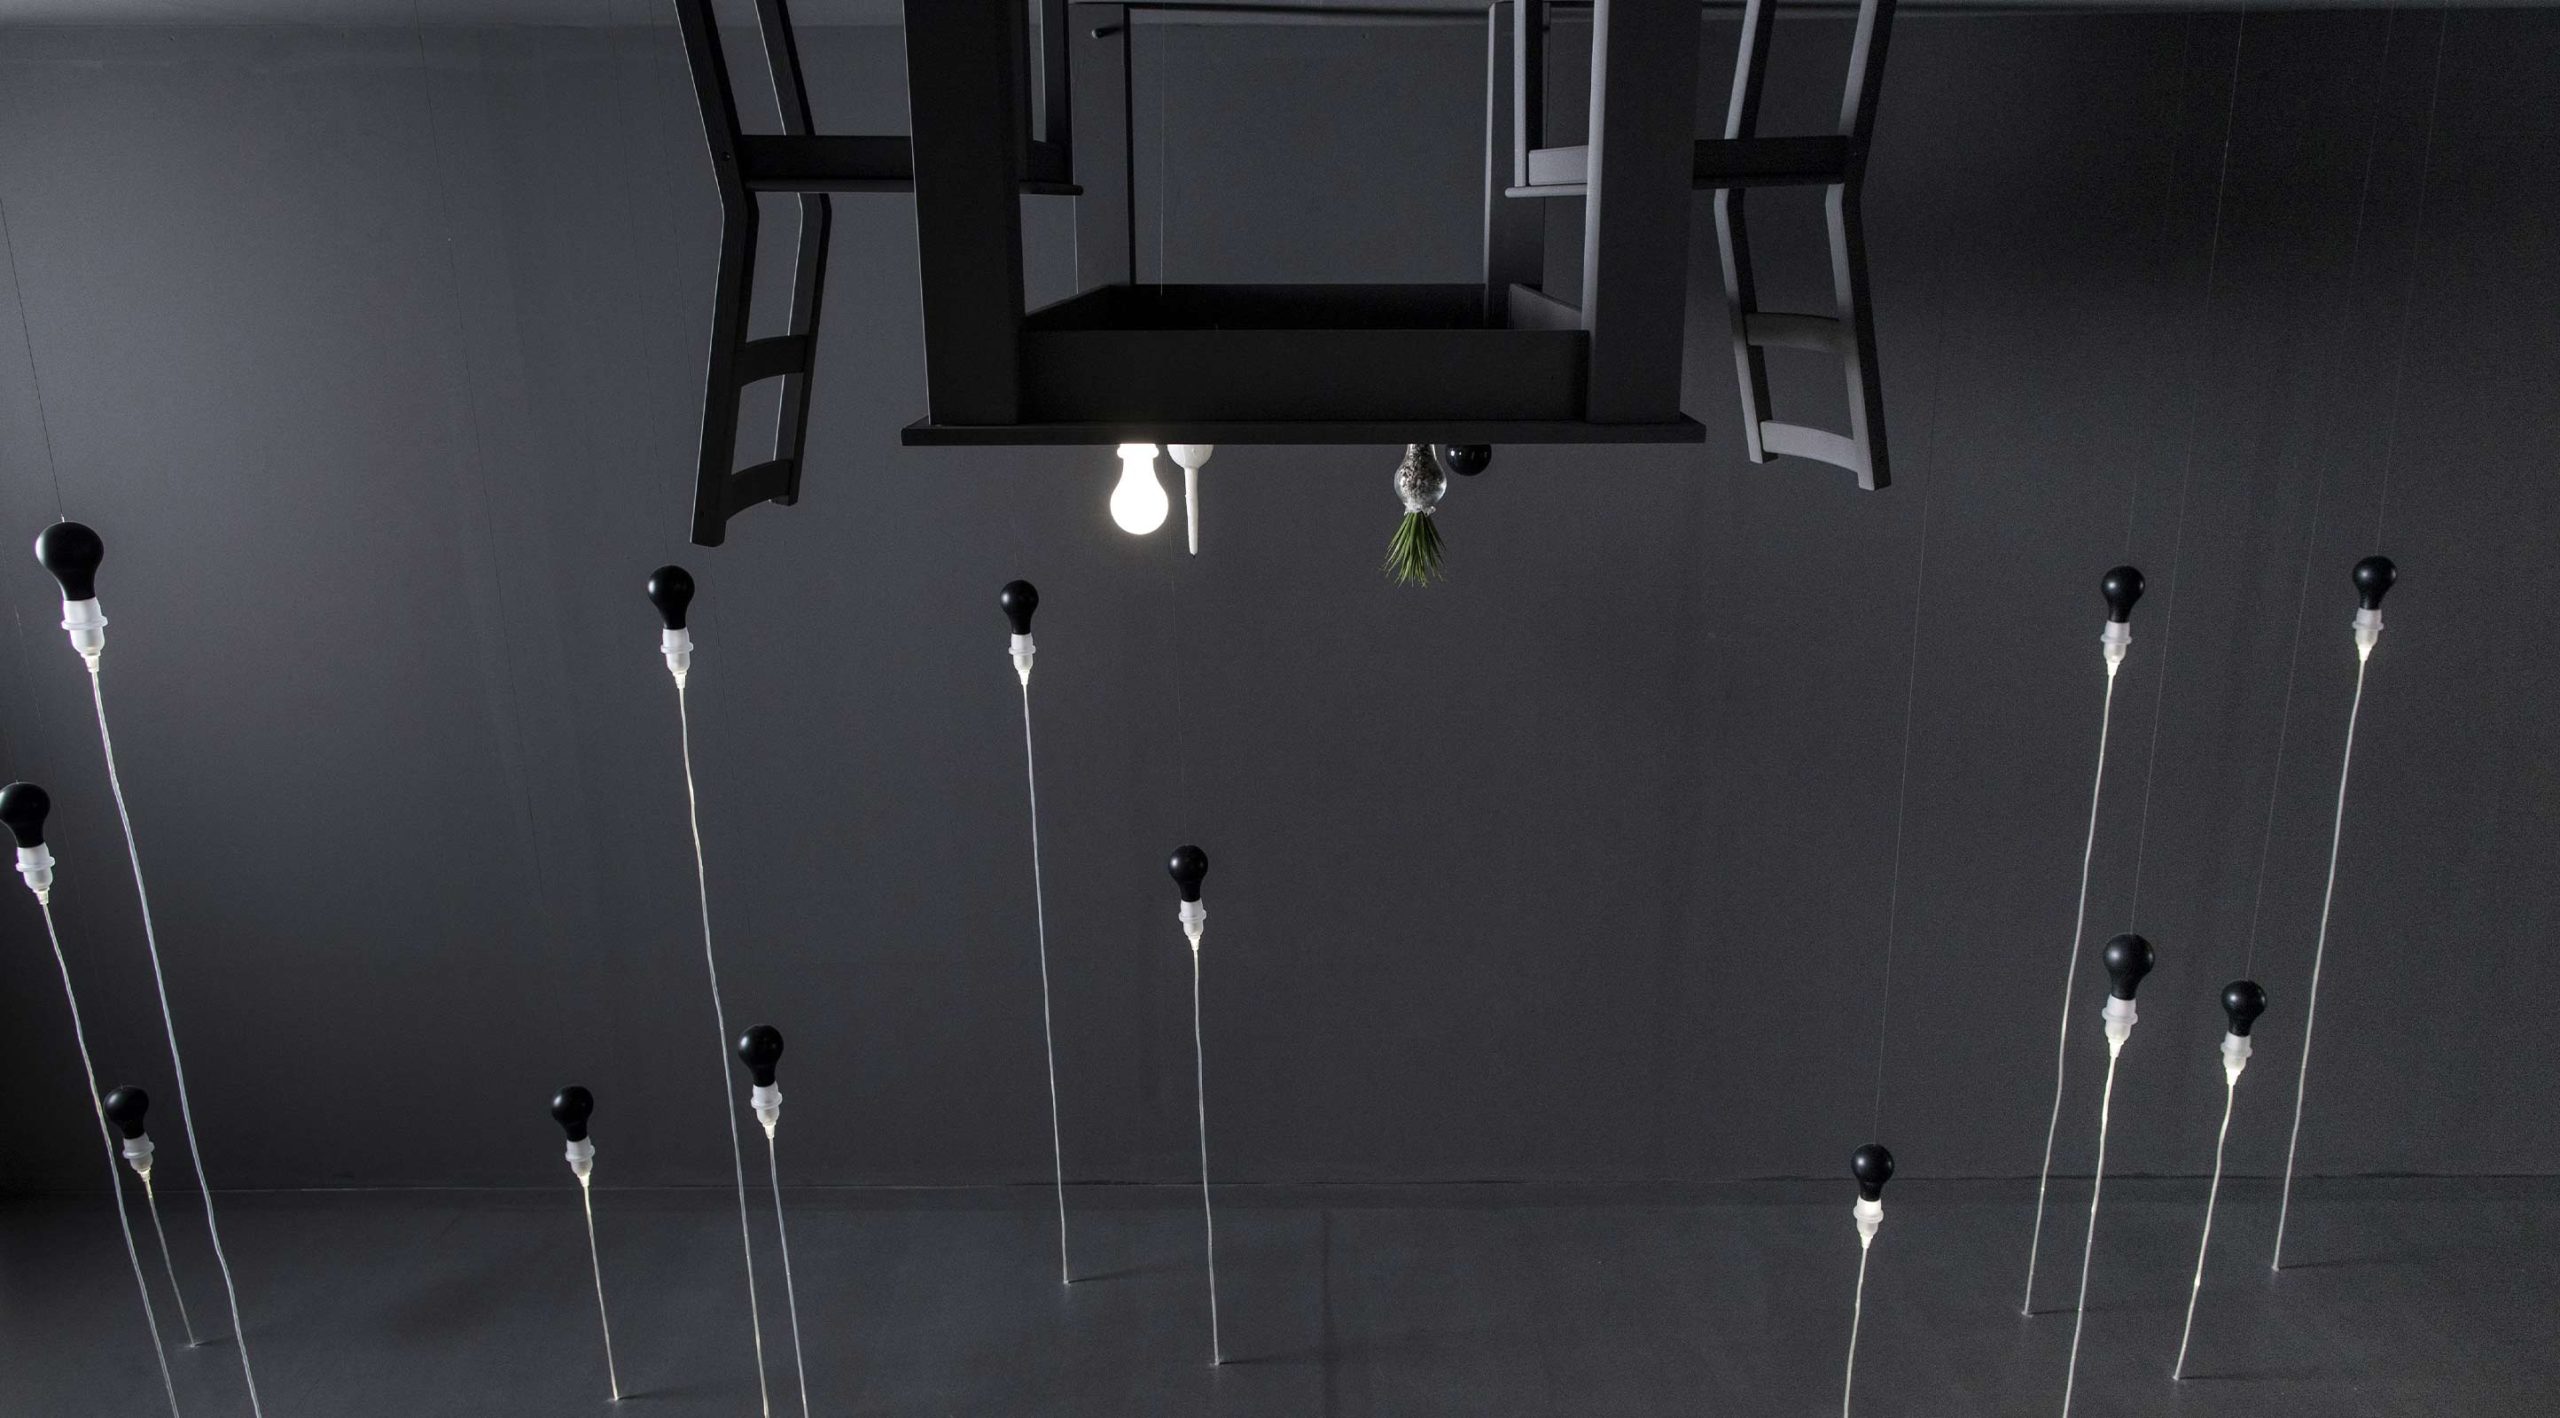 Reverse Room: eine surreale Installation von James Wines, die die Wahrnehmung auf den Kopf stellt